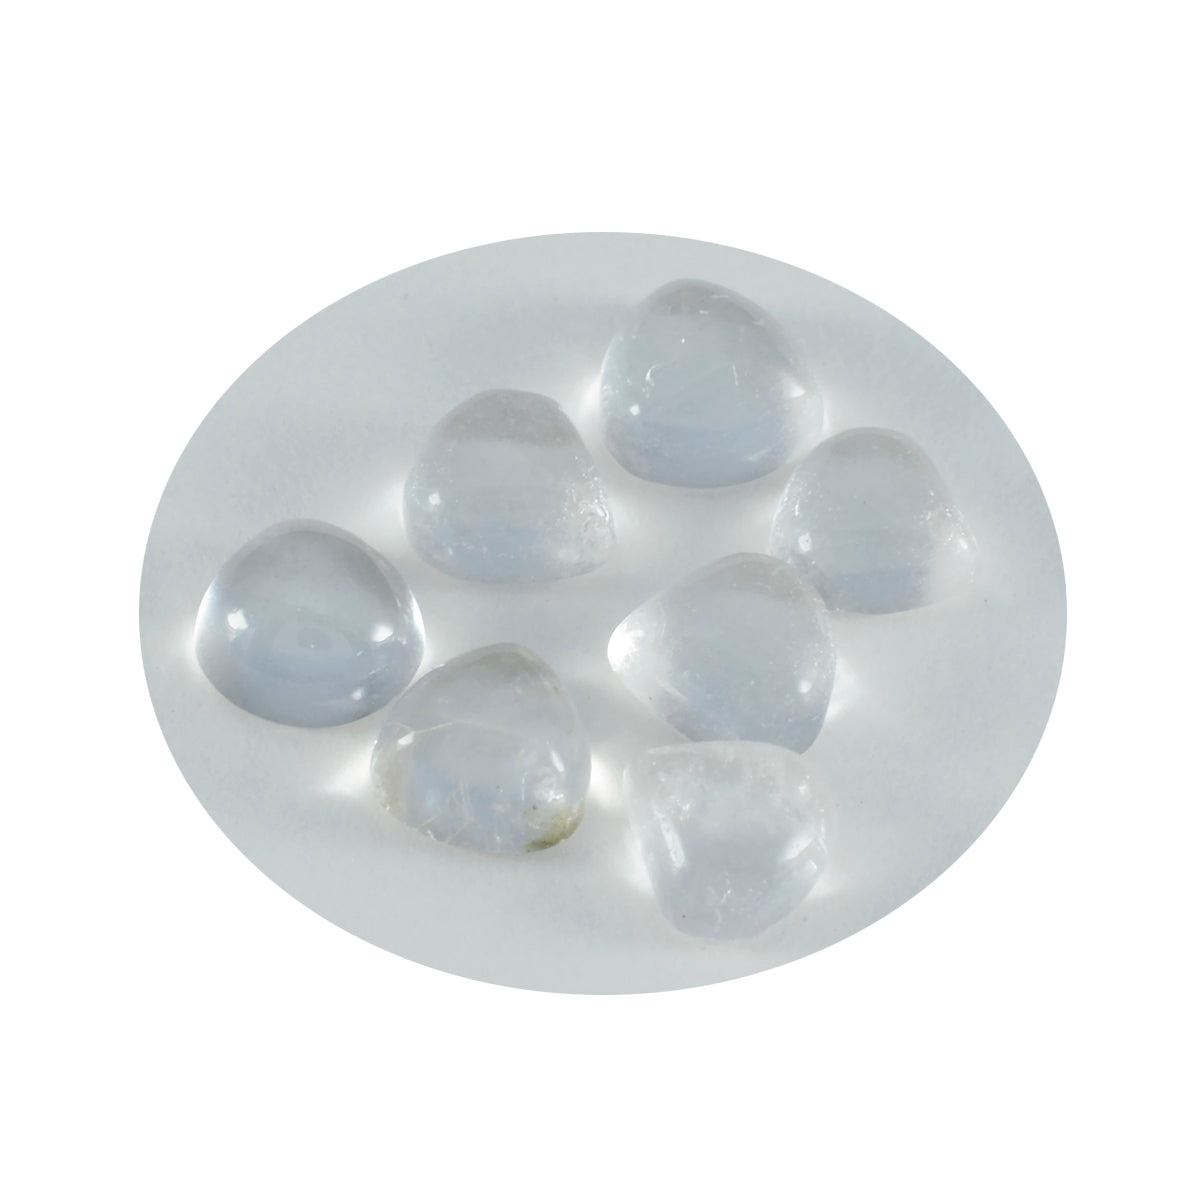 Riyogems 1 pieza cabujón de cuarzo de cristal blanco 11x11mm forma de corazón gema de calidad AA